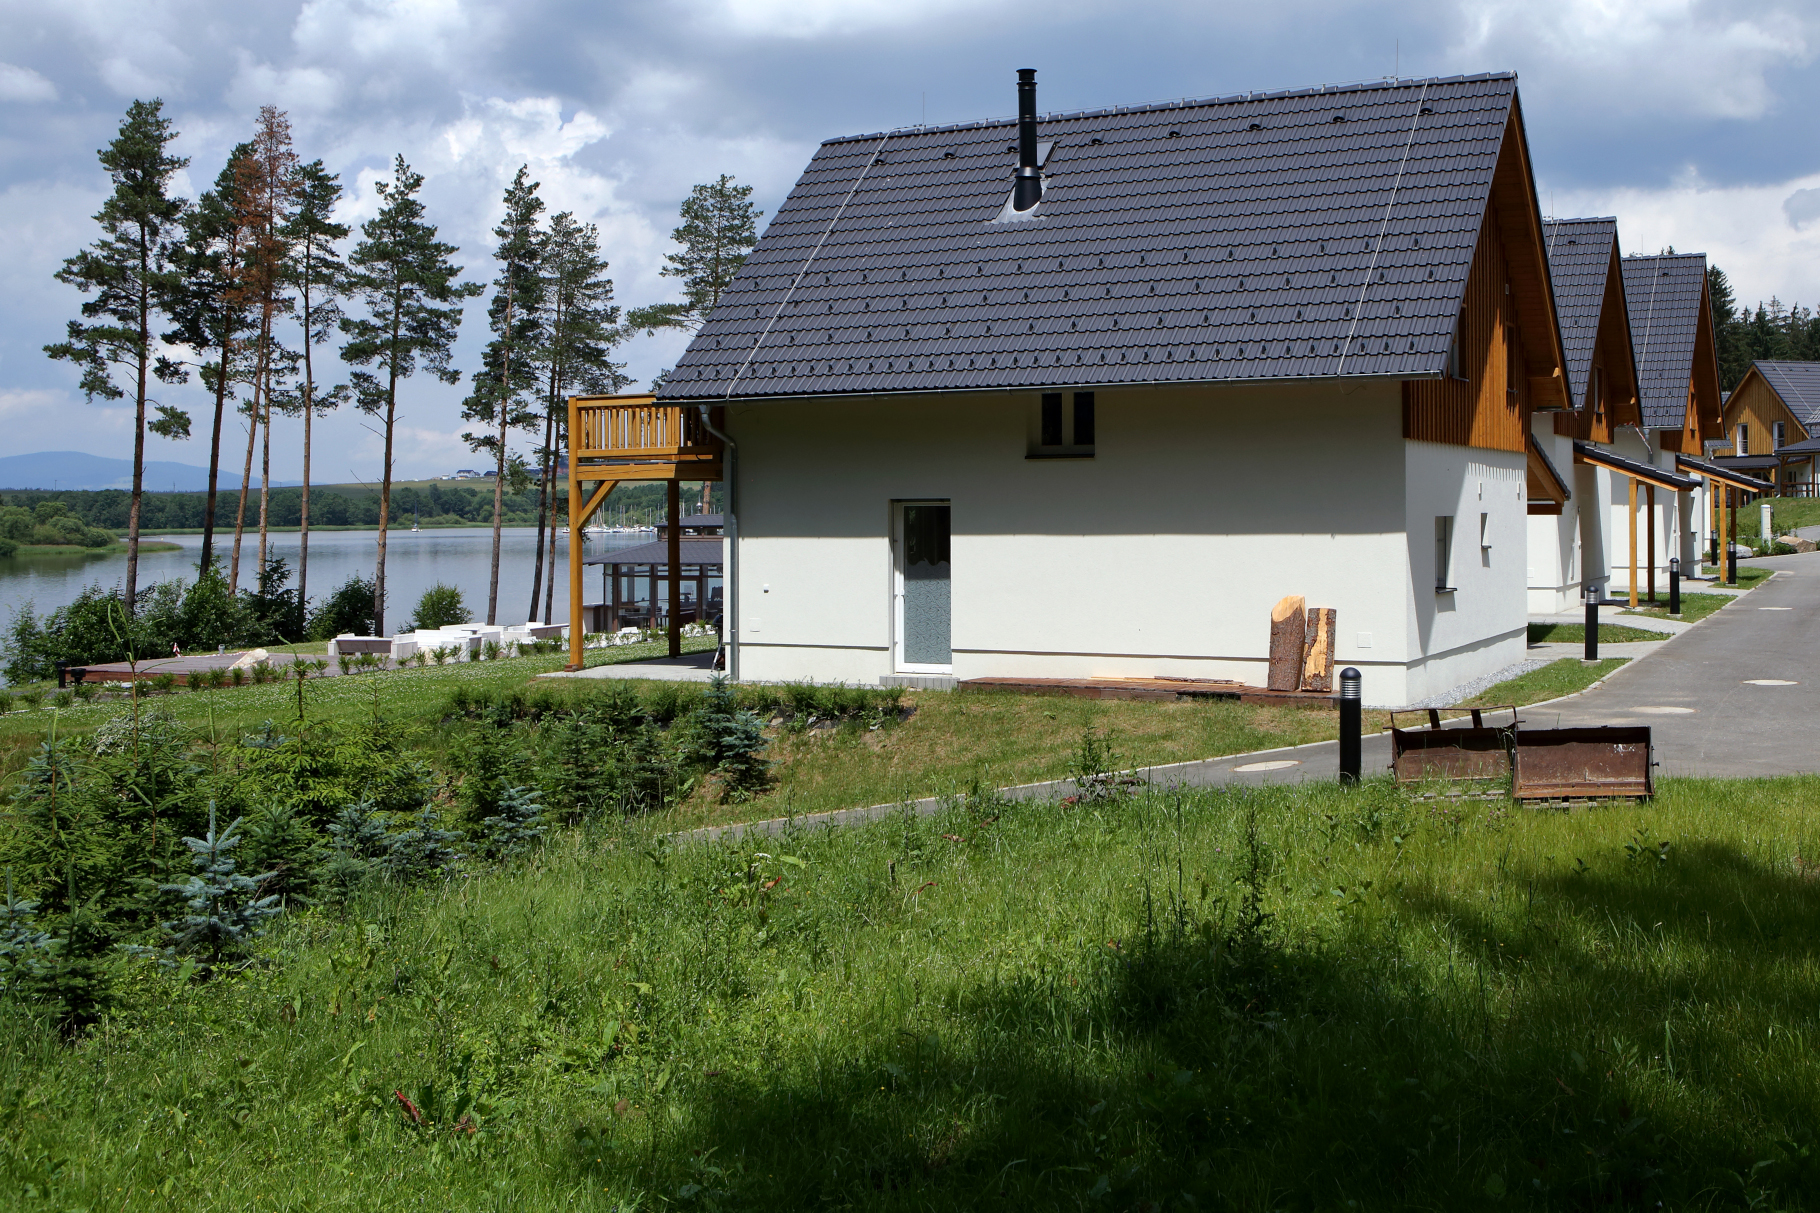 Černá v Pošumaví – Lakeside Village, Lipno - Budownictwo lądowe naziemne